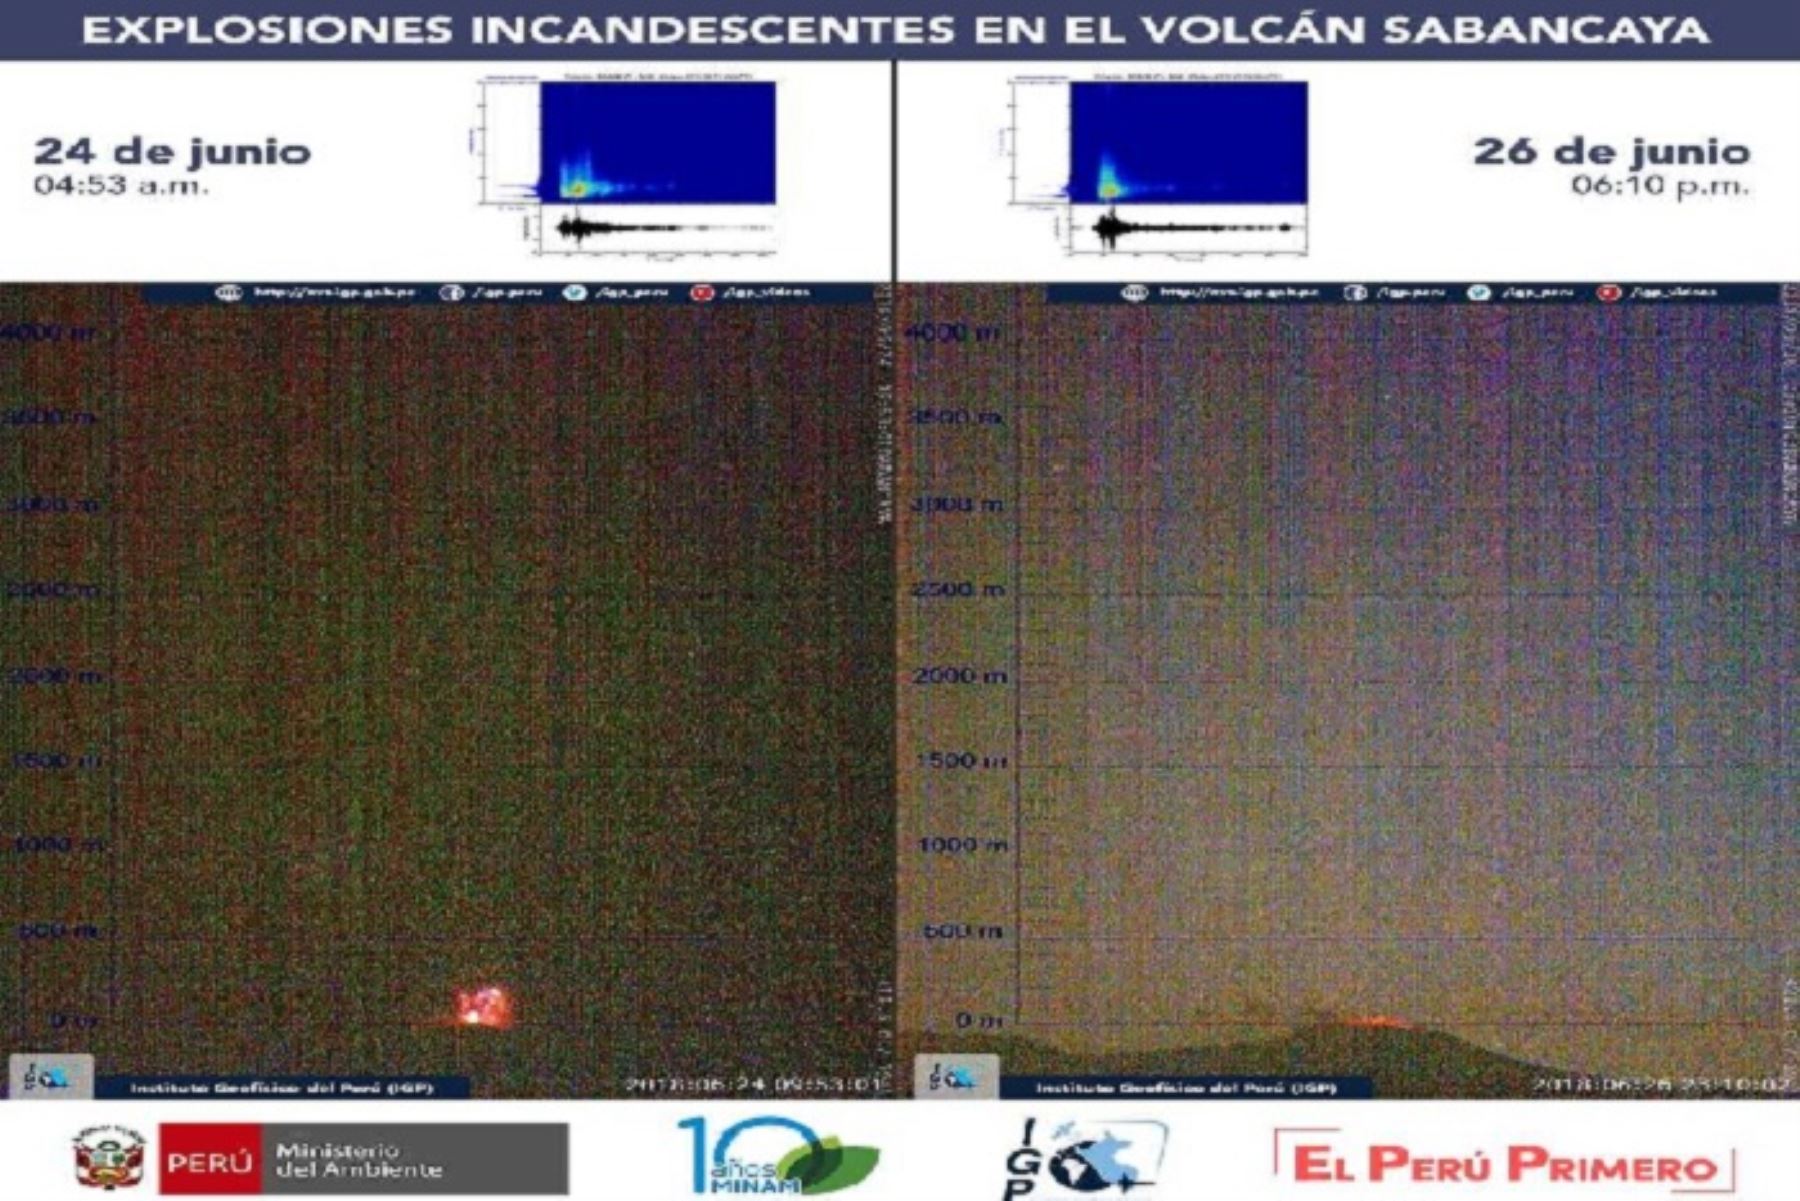 En esta última semana se han registrado 11 anomalías térmicas en el volcán Sabancaya, que indican la presencia de un cuerpo de magma en la superficie del cráter.